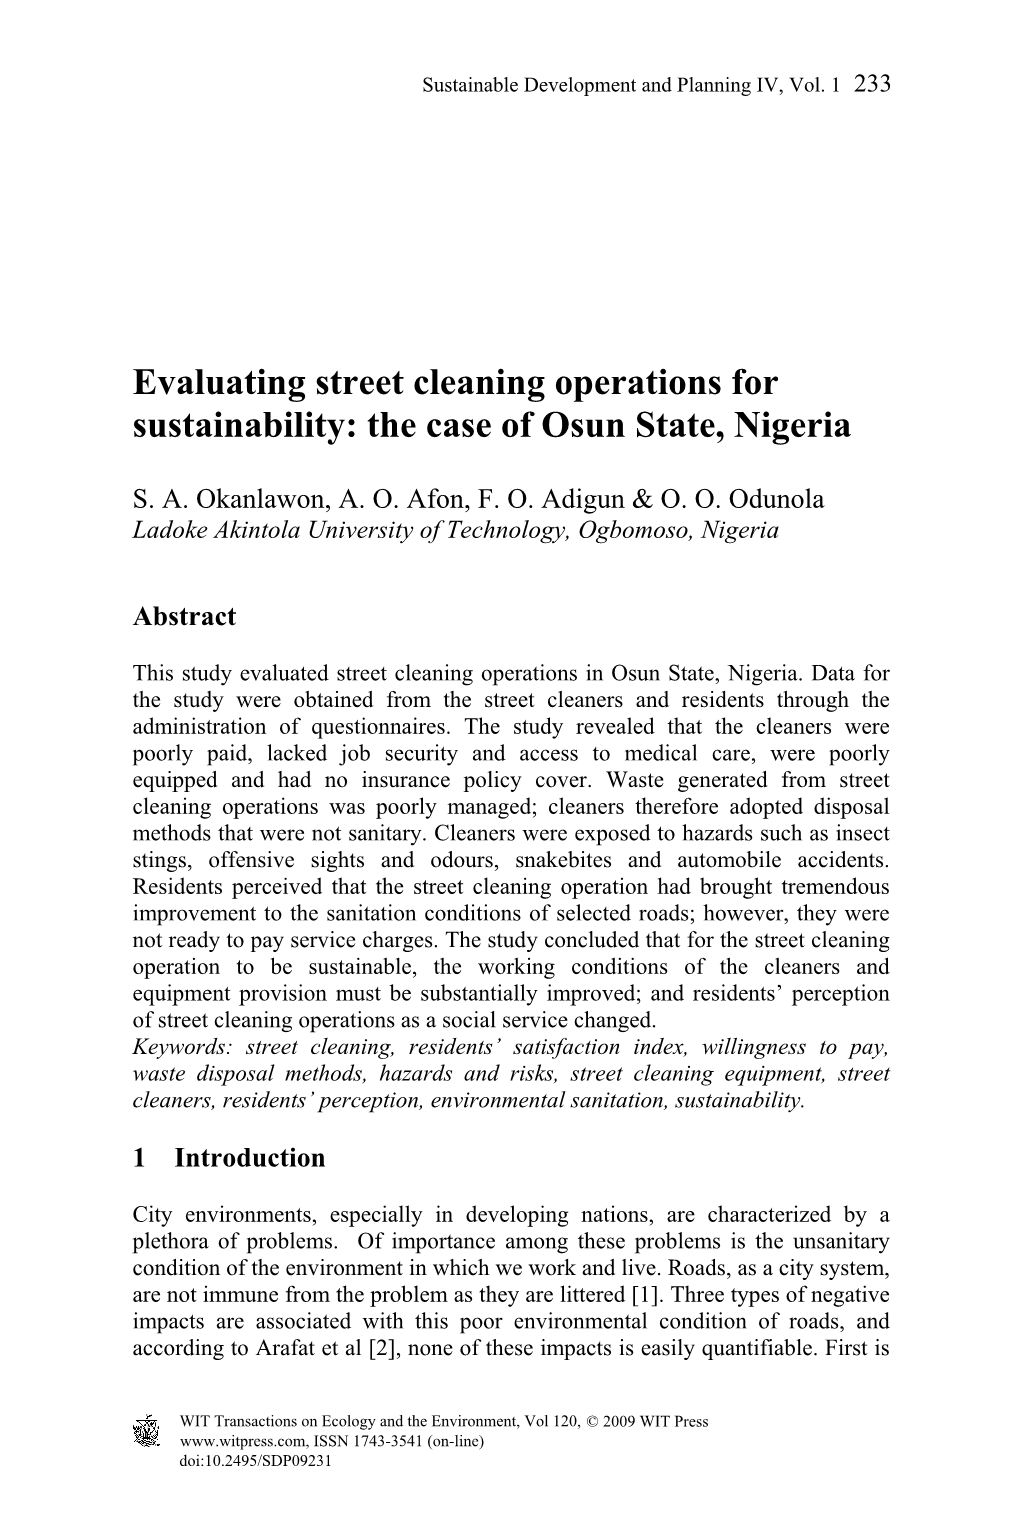 The Case of Osun State, Nigeria